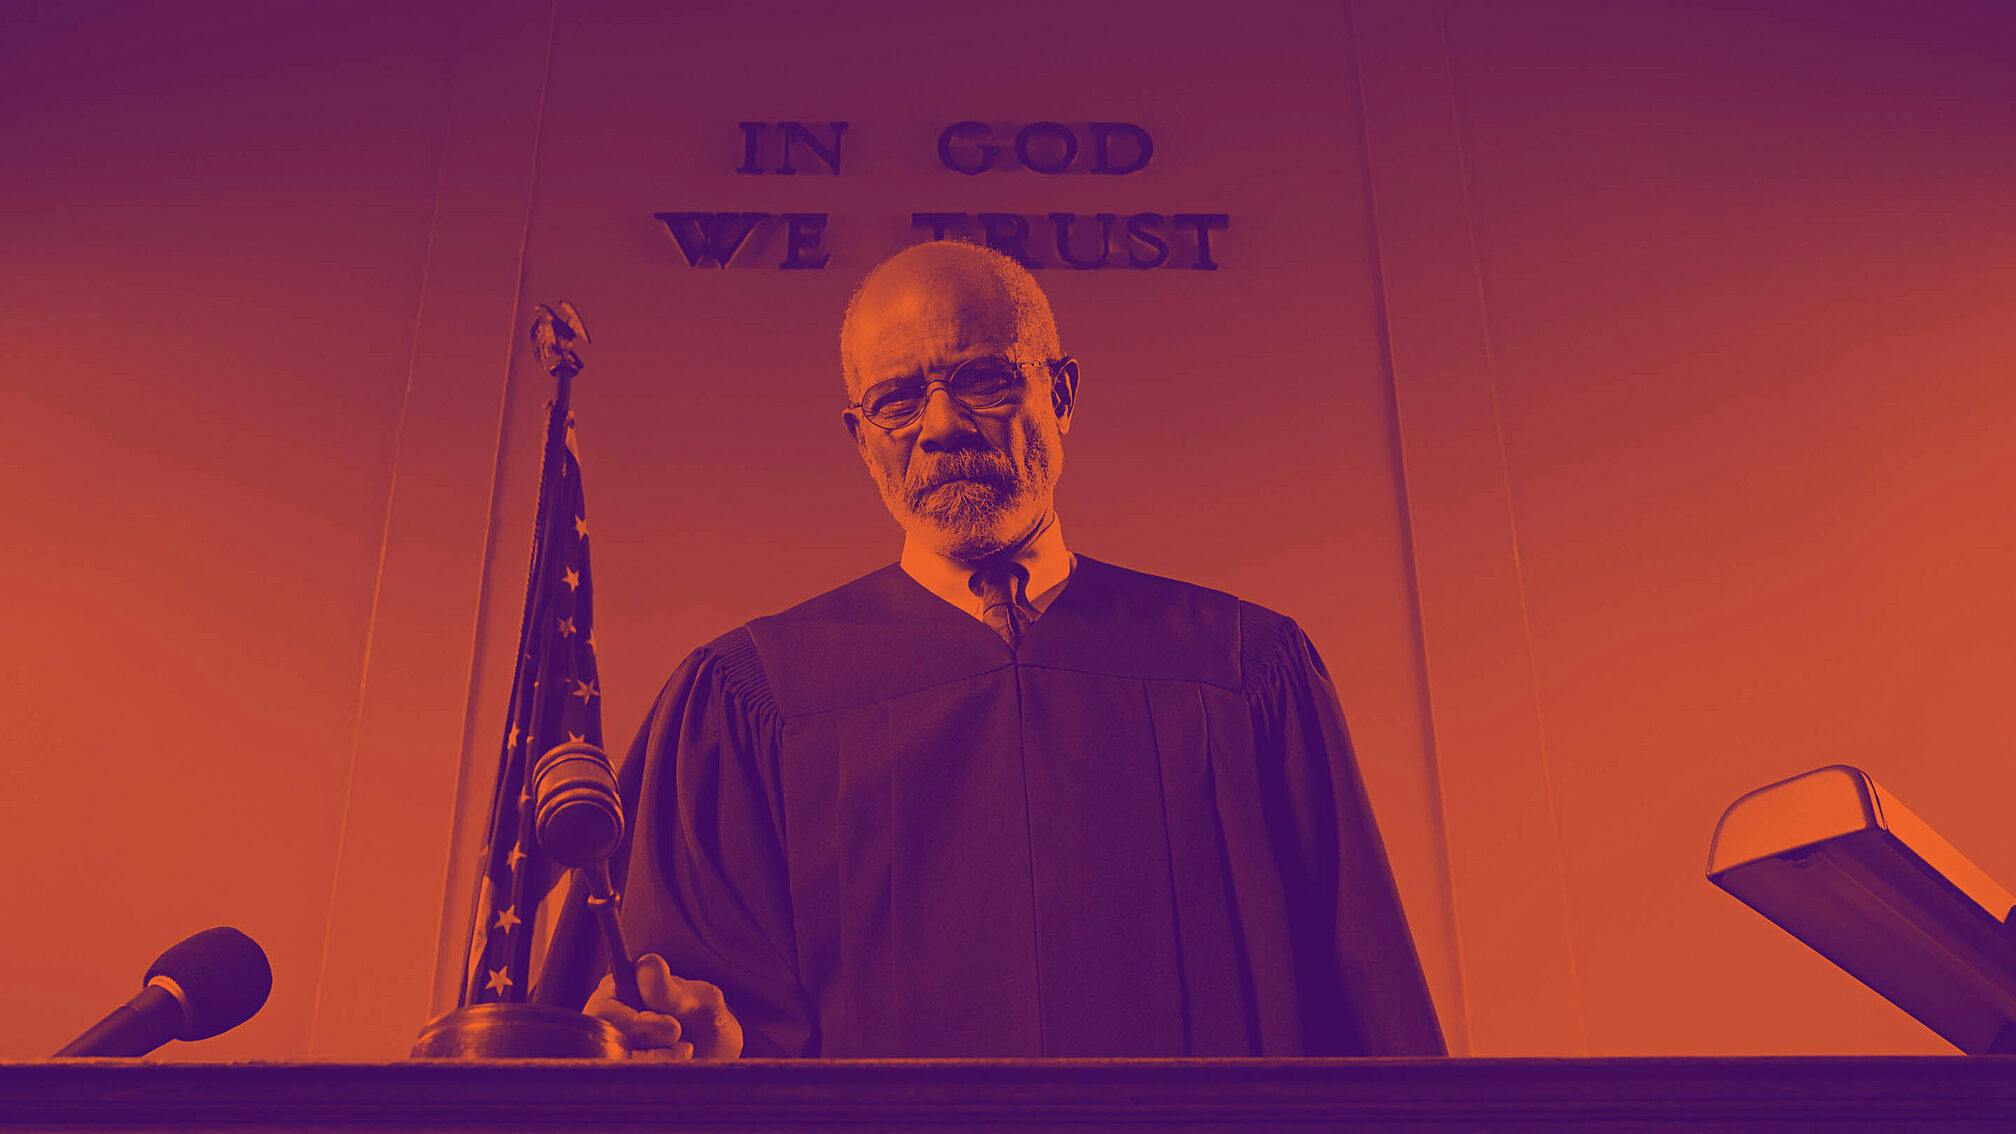 Stylized image of black judge at bench holding gavel.